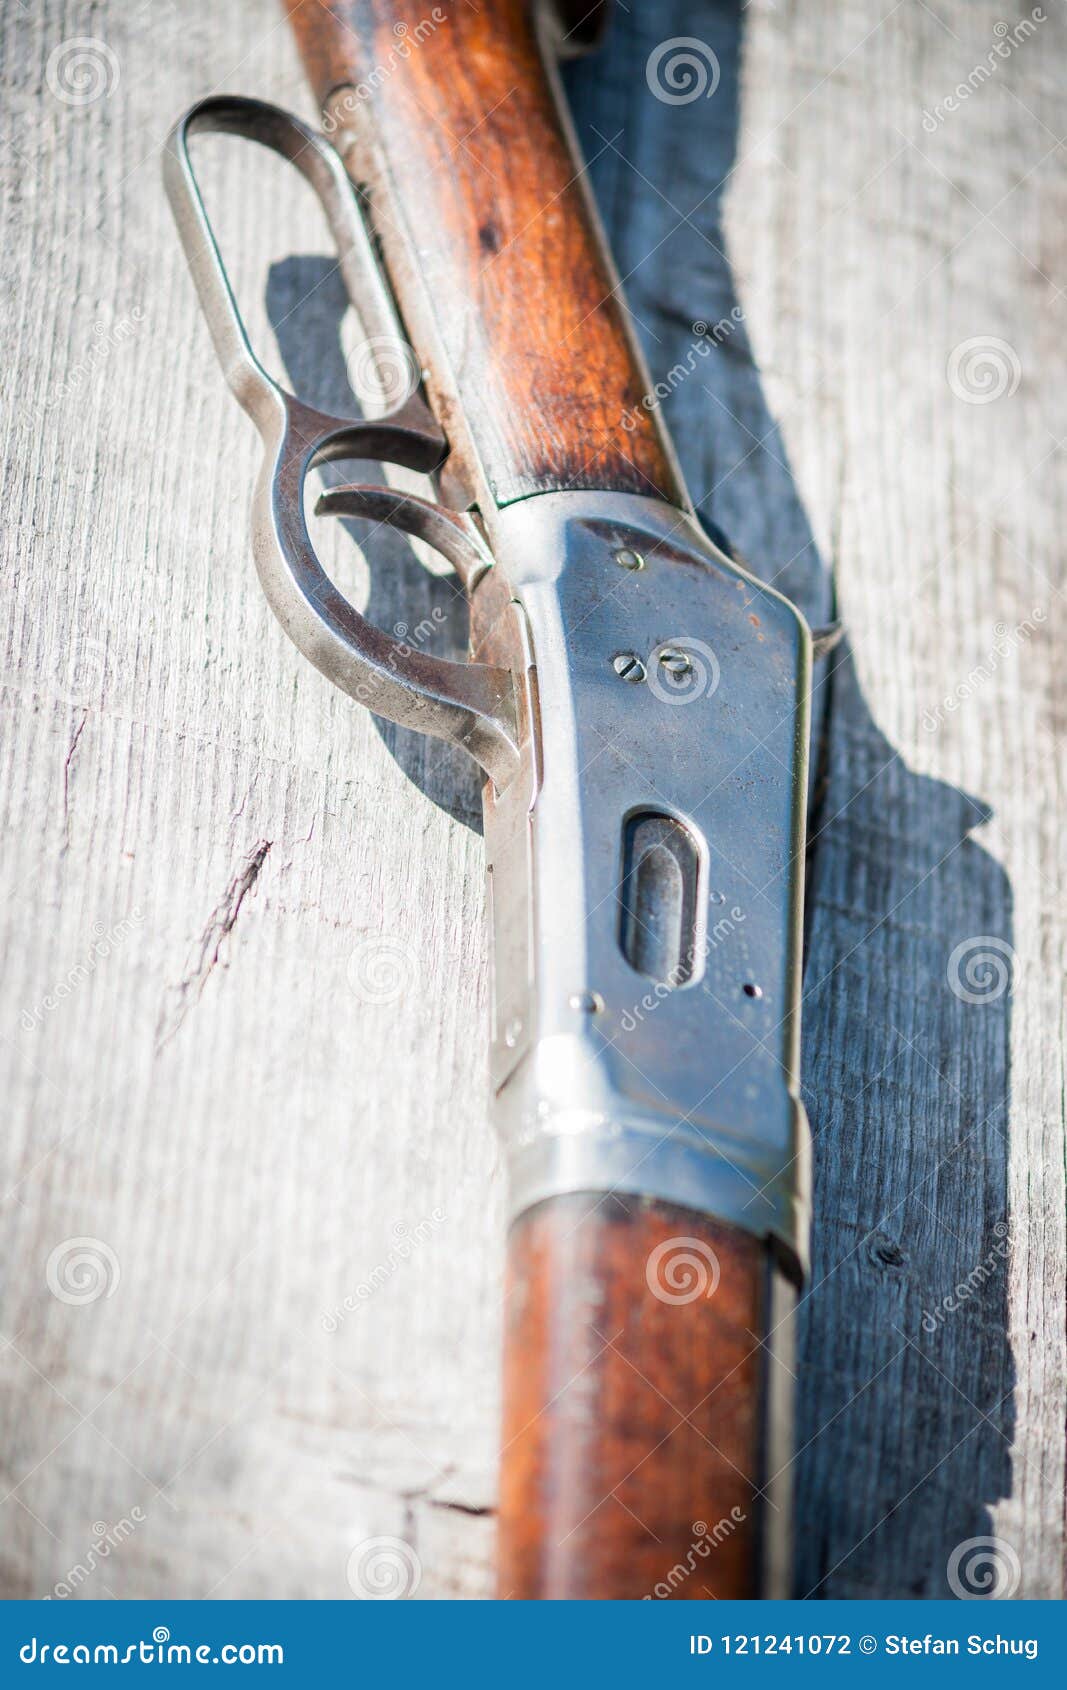 荒野大镖客2里兰卡斯特连发步枪原型到底是什么？温彻斯特步枪的各型号分辨 - 哔哩哔哩